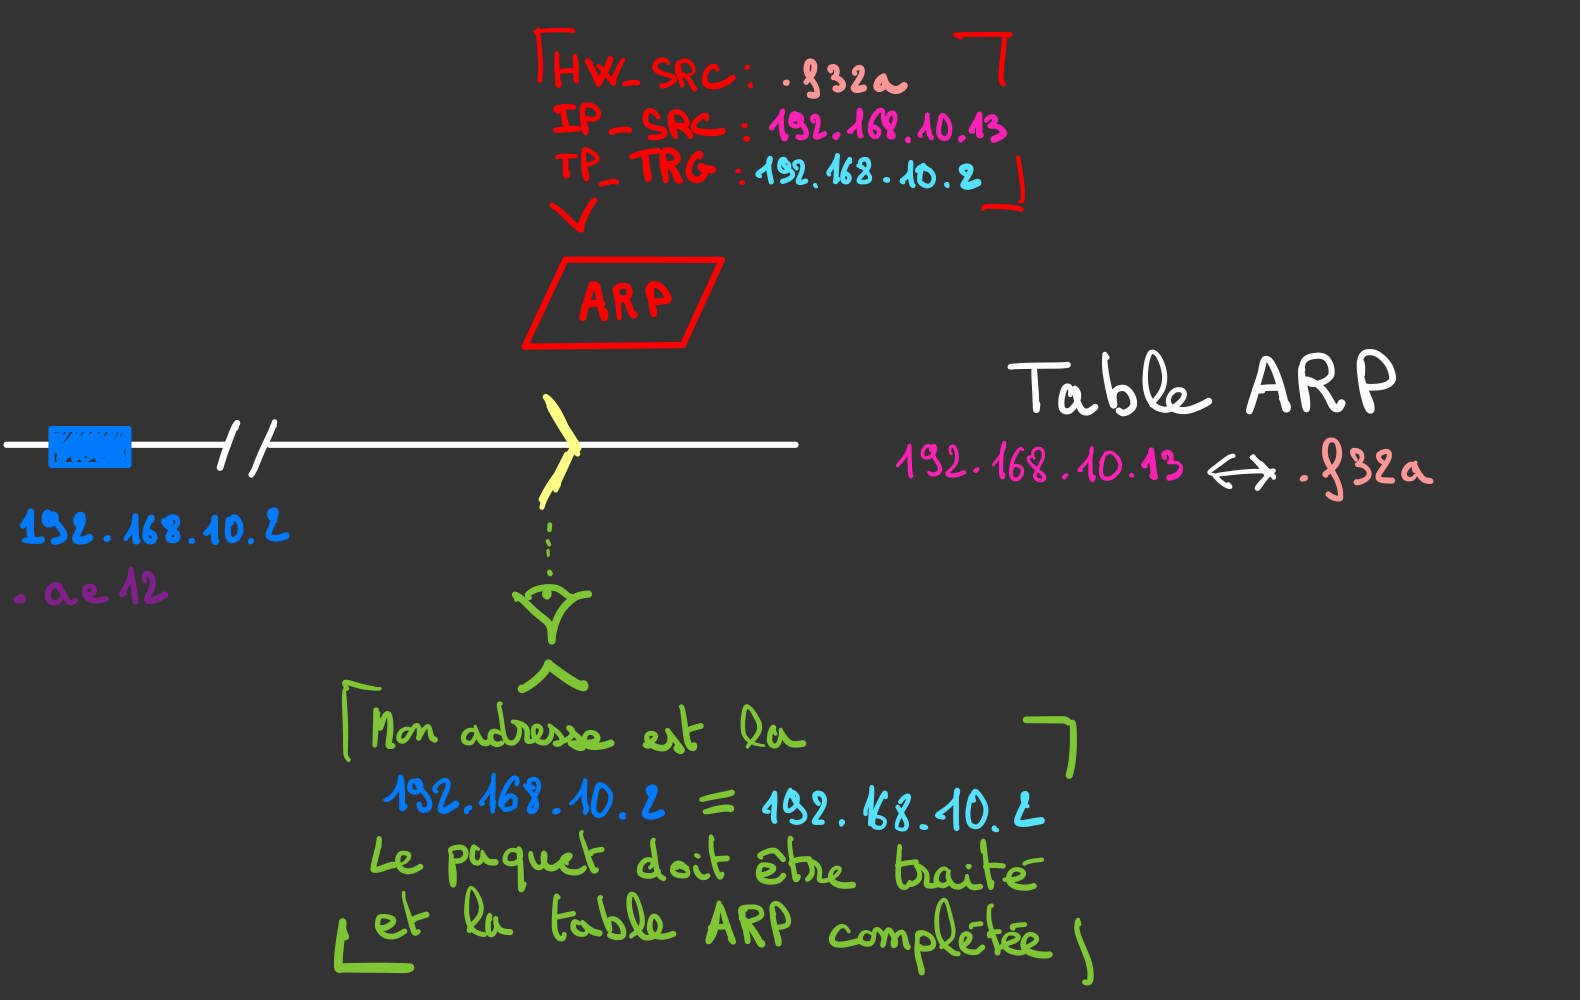 le paquet ARP de réponse est traité et la table ARP complétée